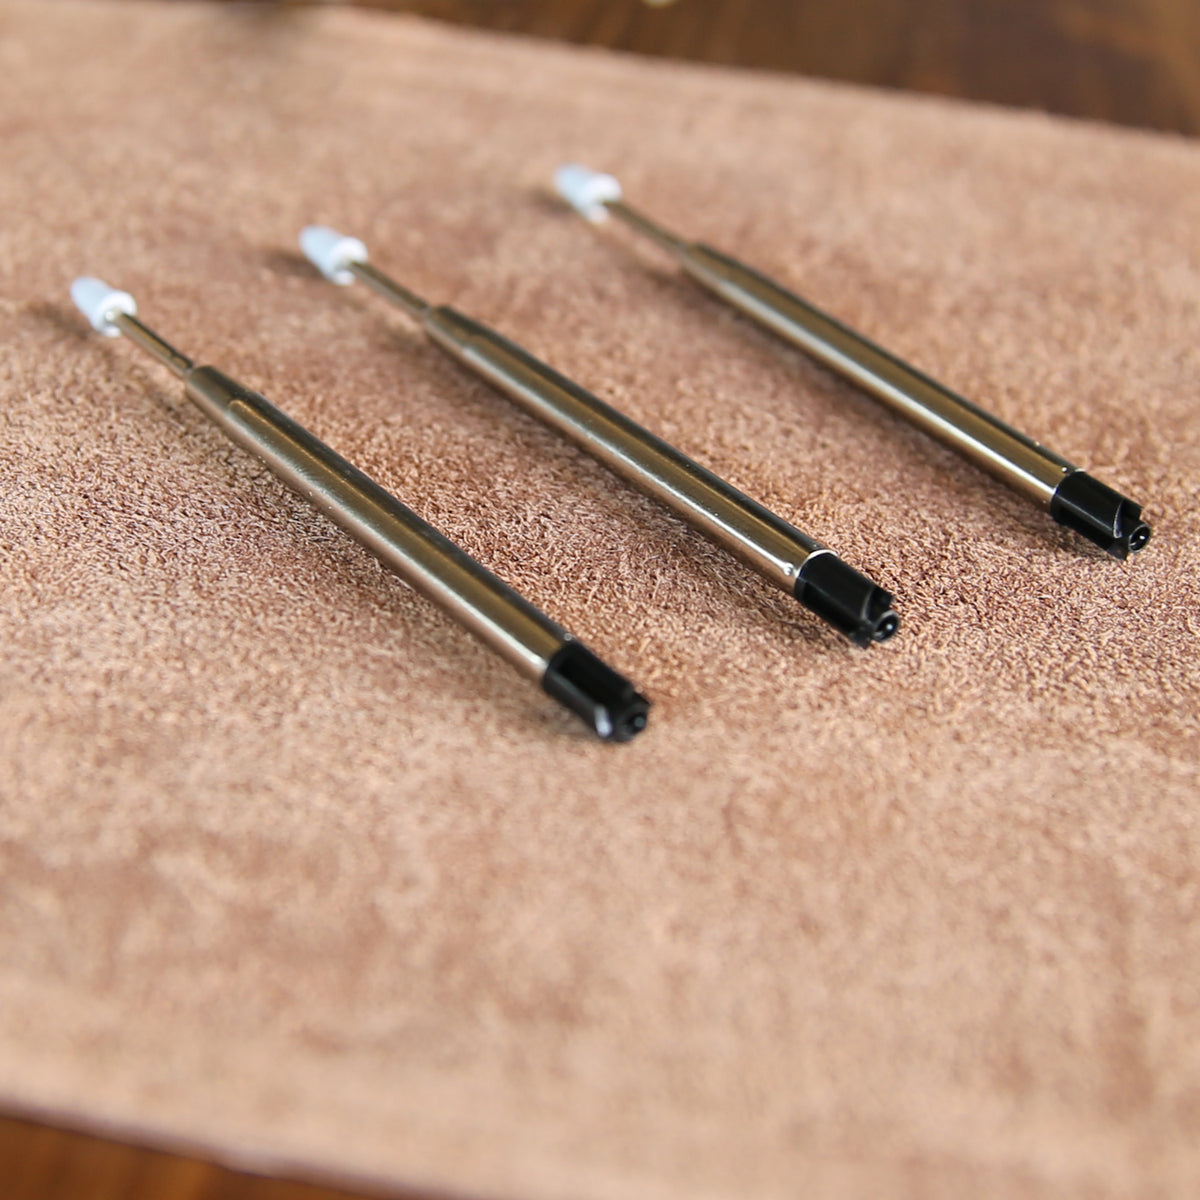 3 parker style refills for bolt action ballpoint pens